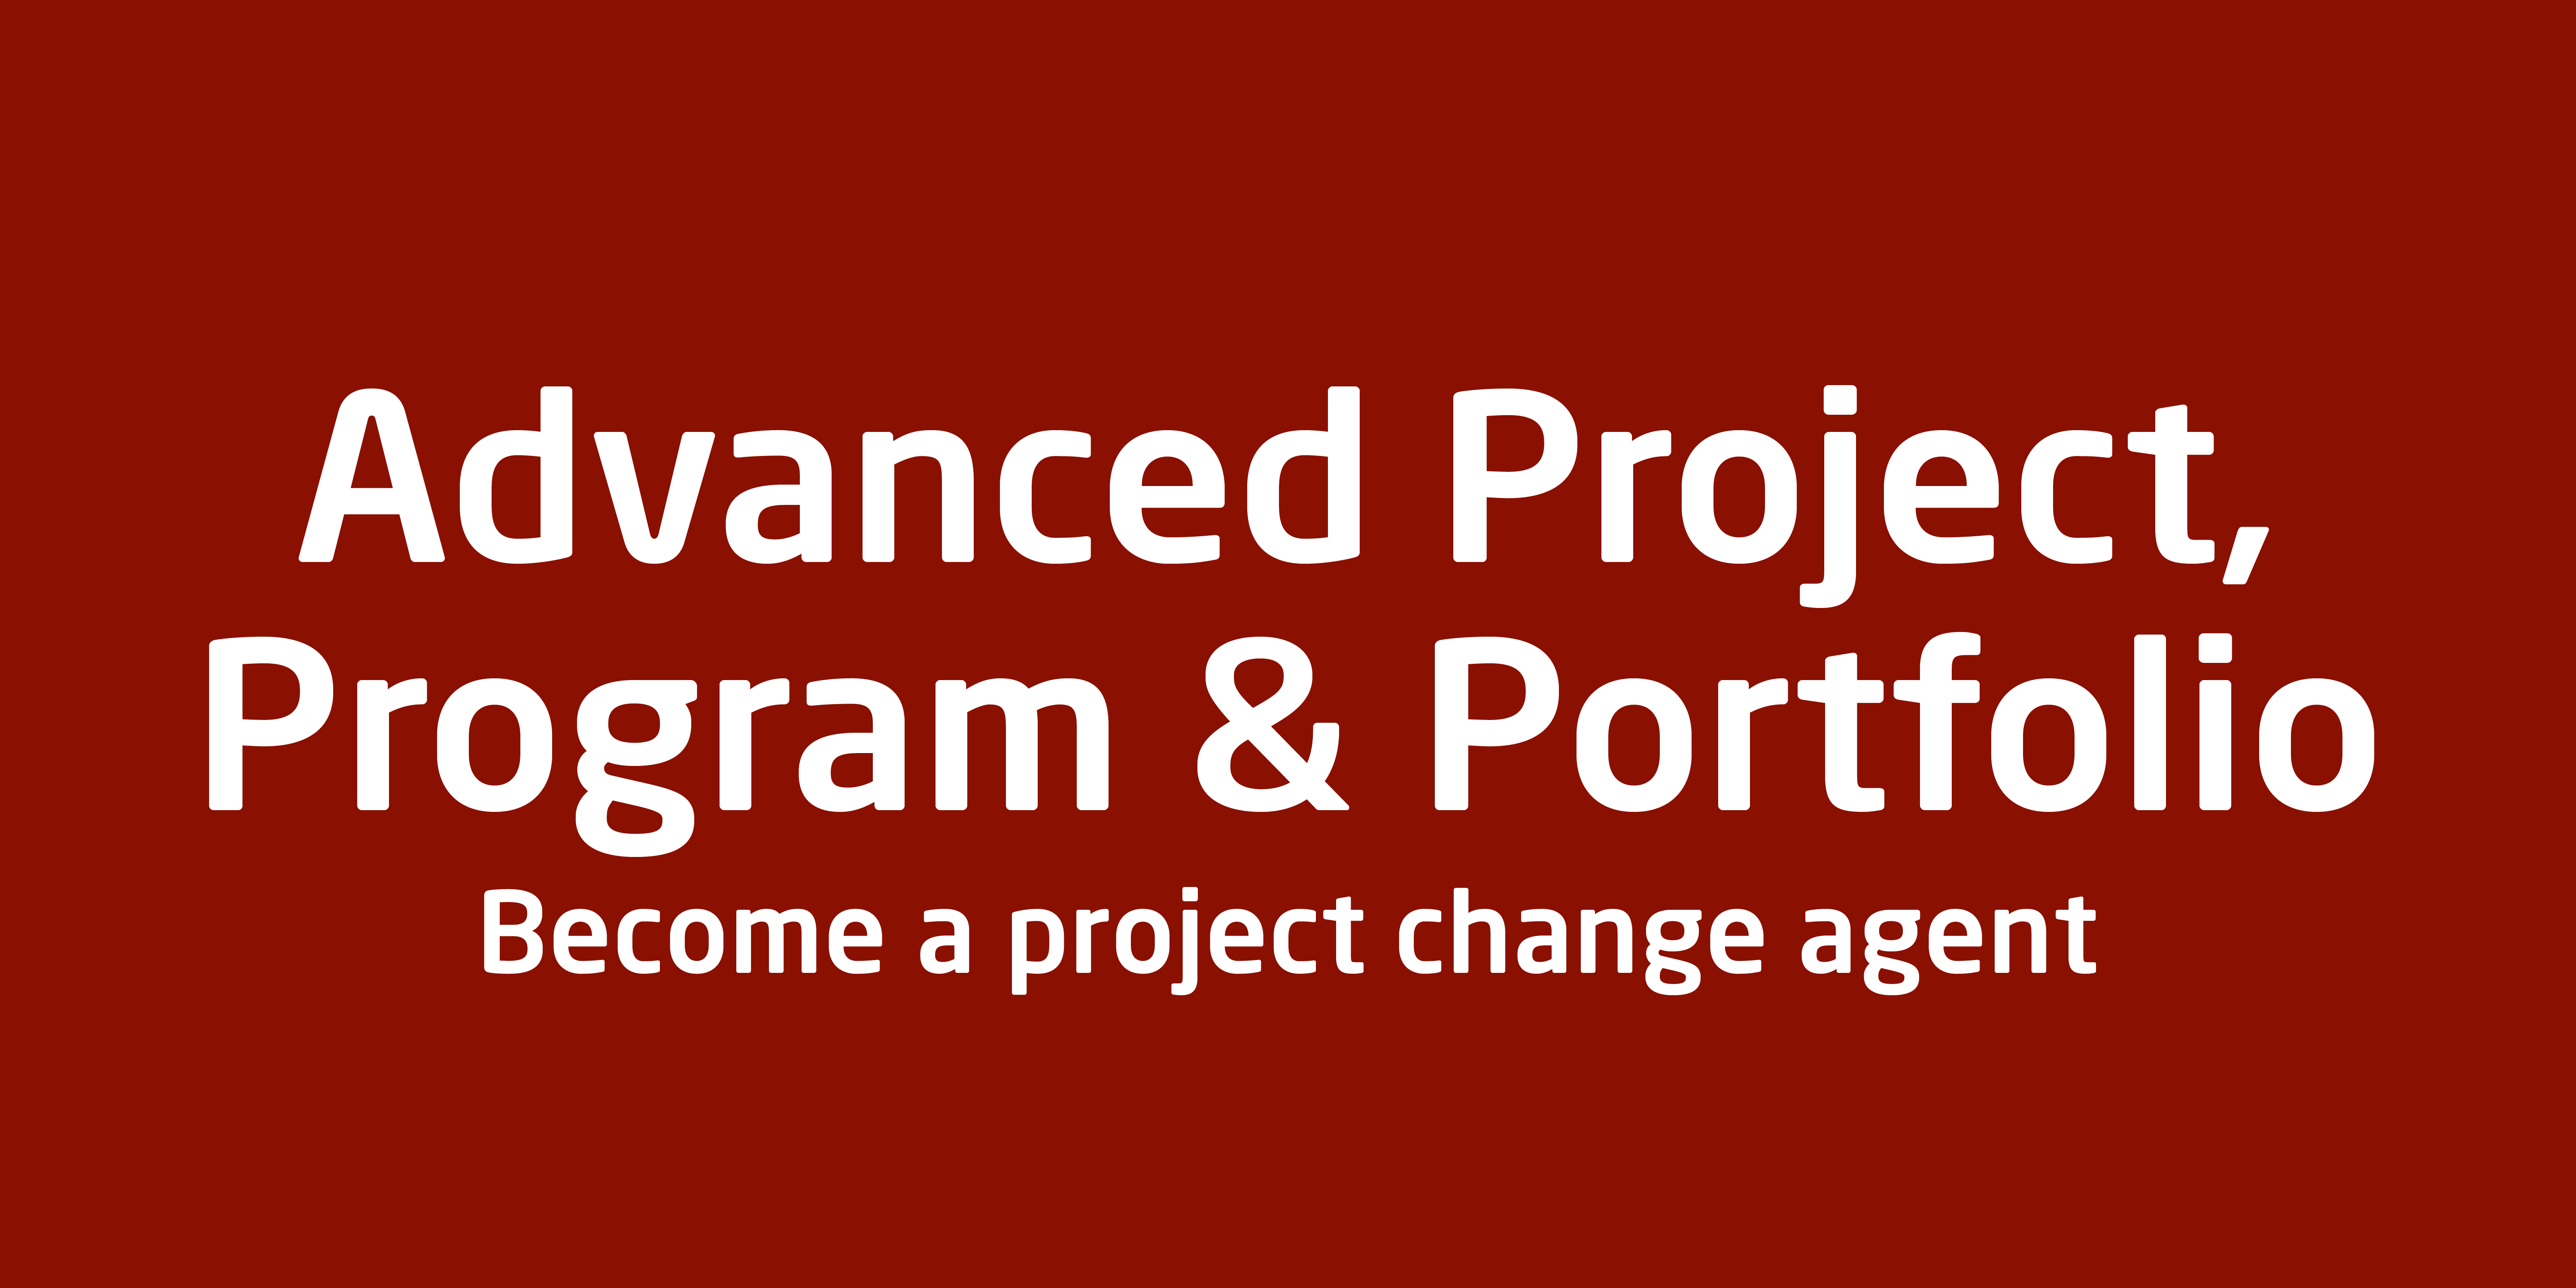 Advanced Project & portfolio management